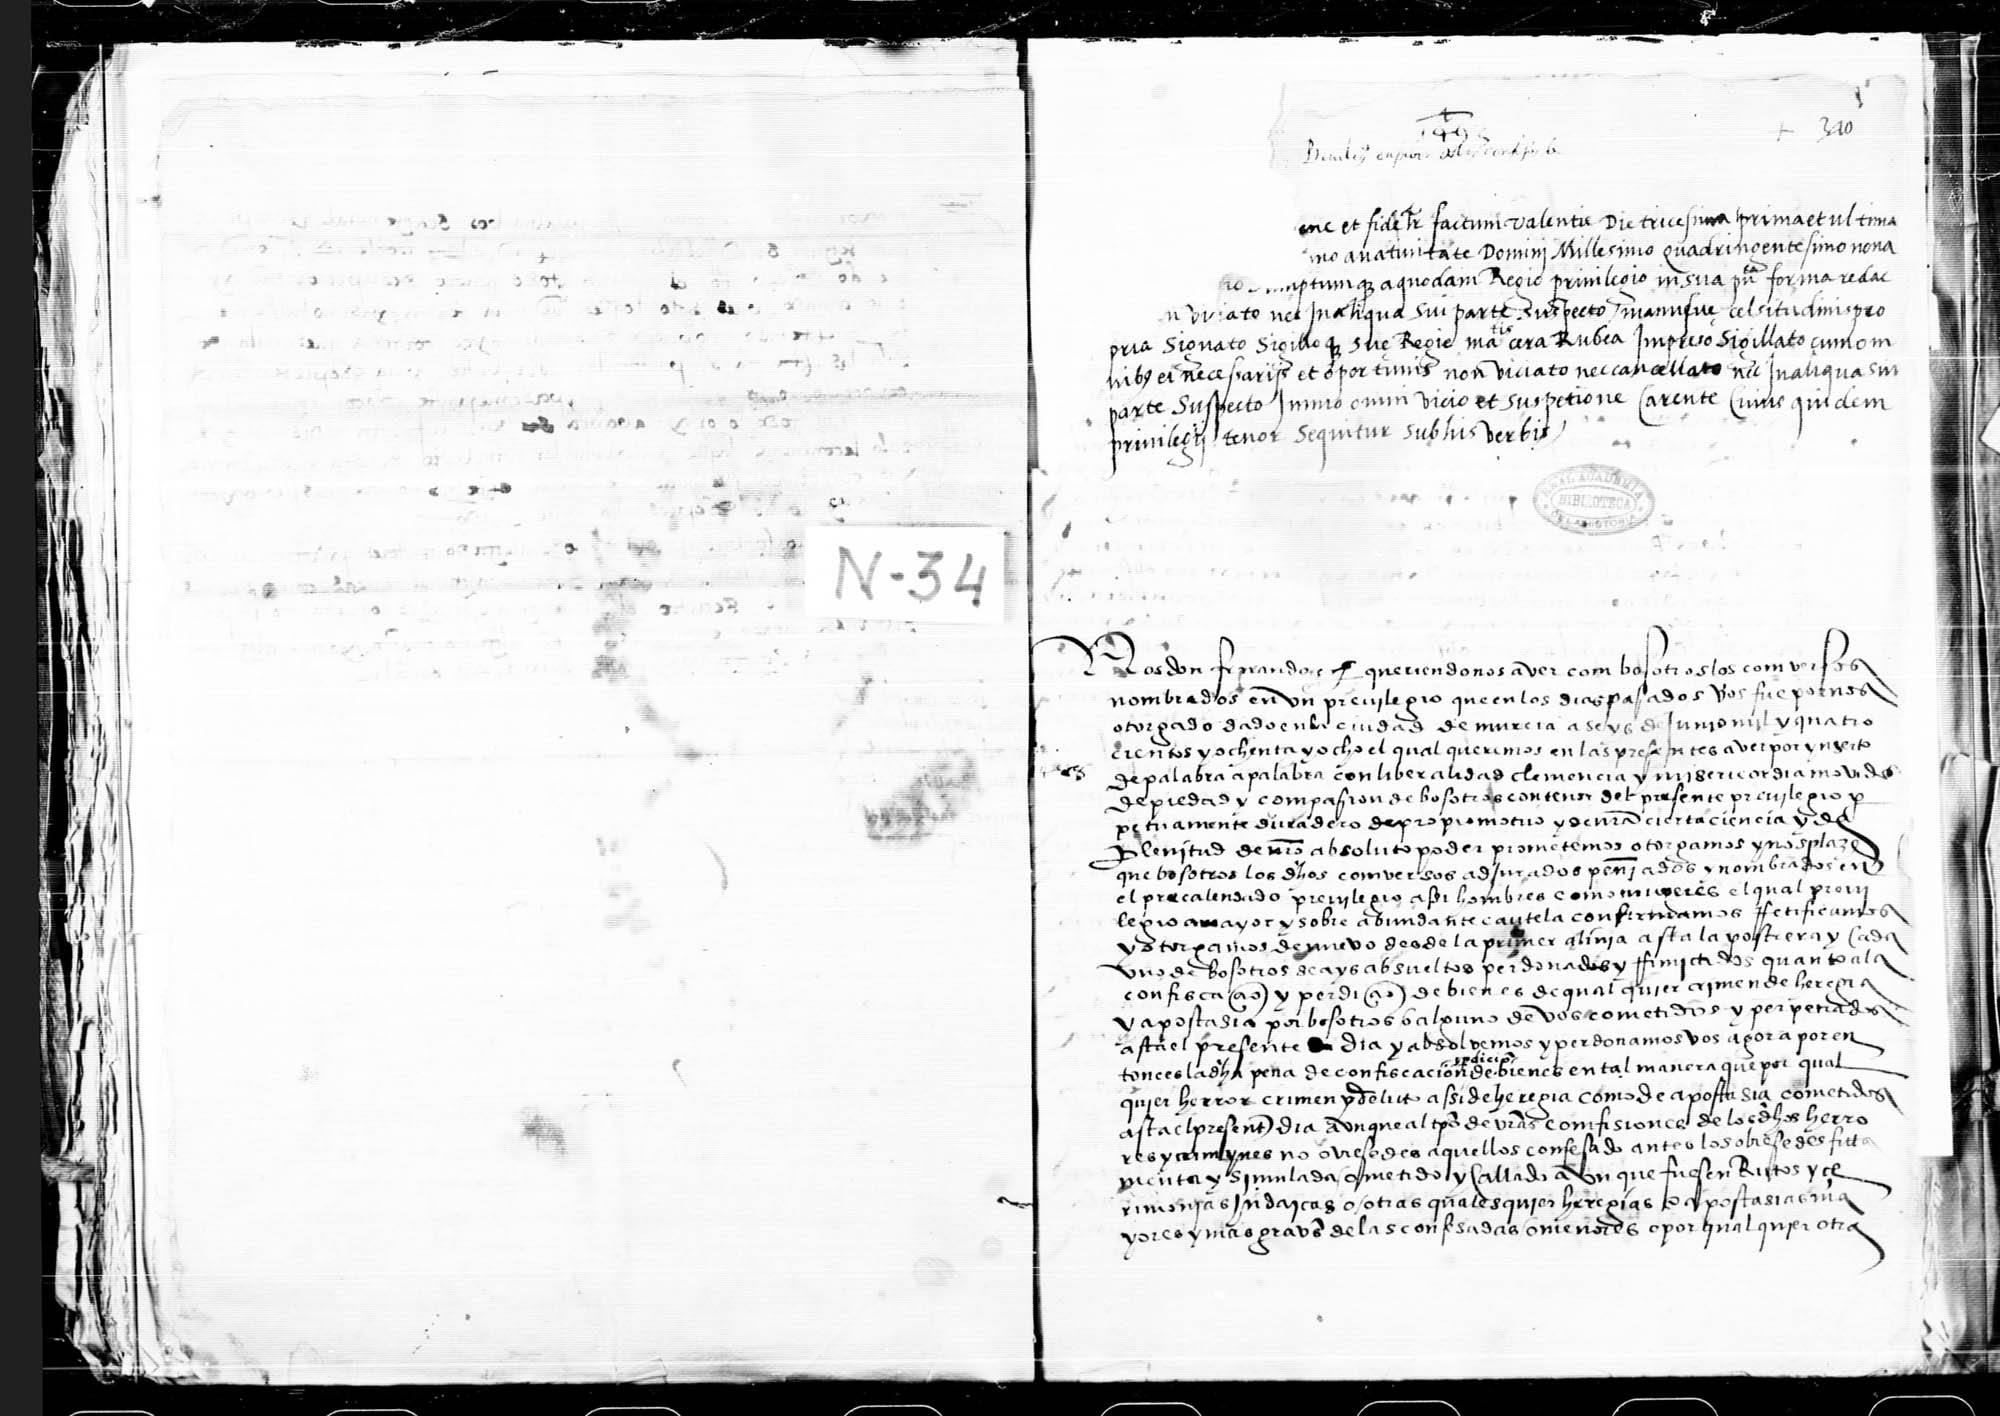 Privilegio del rey Fernando V, en el que confirma otro dado en Murcia el año de 1488 a favor de los conversos.